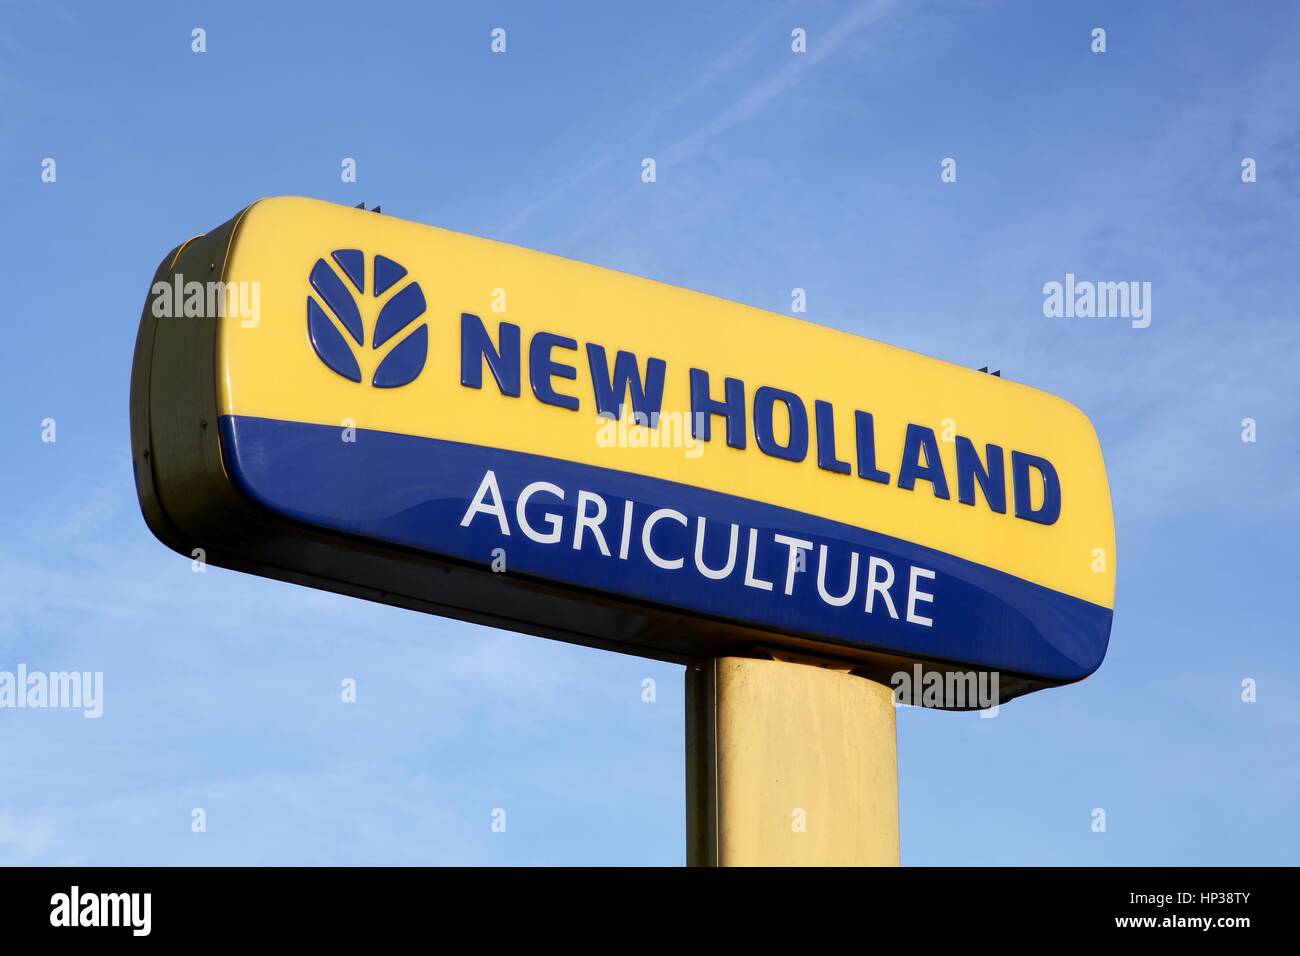 Villars, Francia - 2 Febbraio 2017: New Holland Agriculture logo su un palo. New Holland è una marca di attrezzature agricole Foto Stock